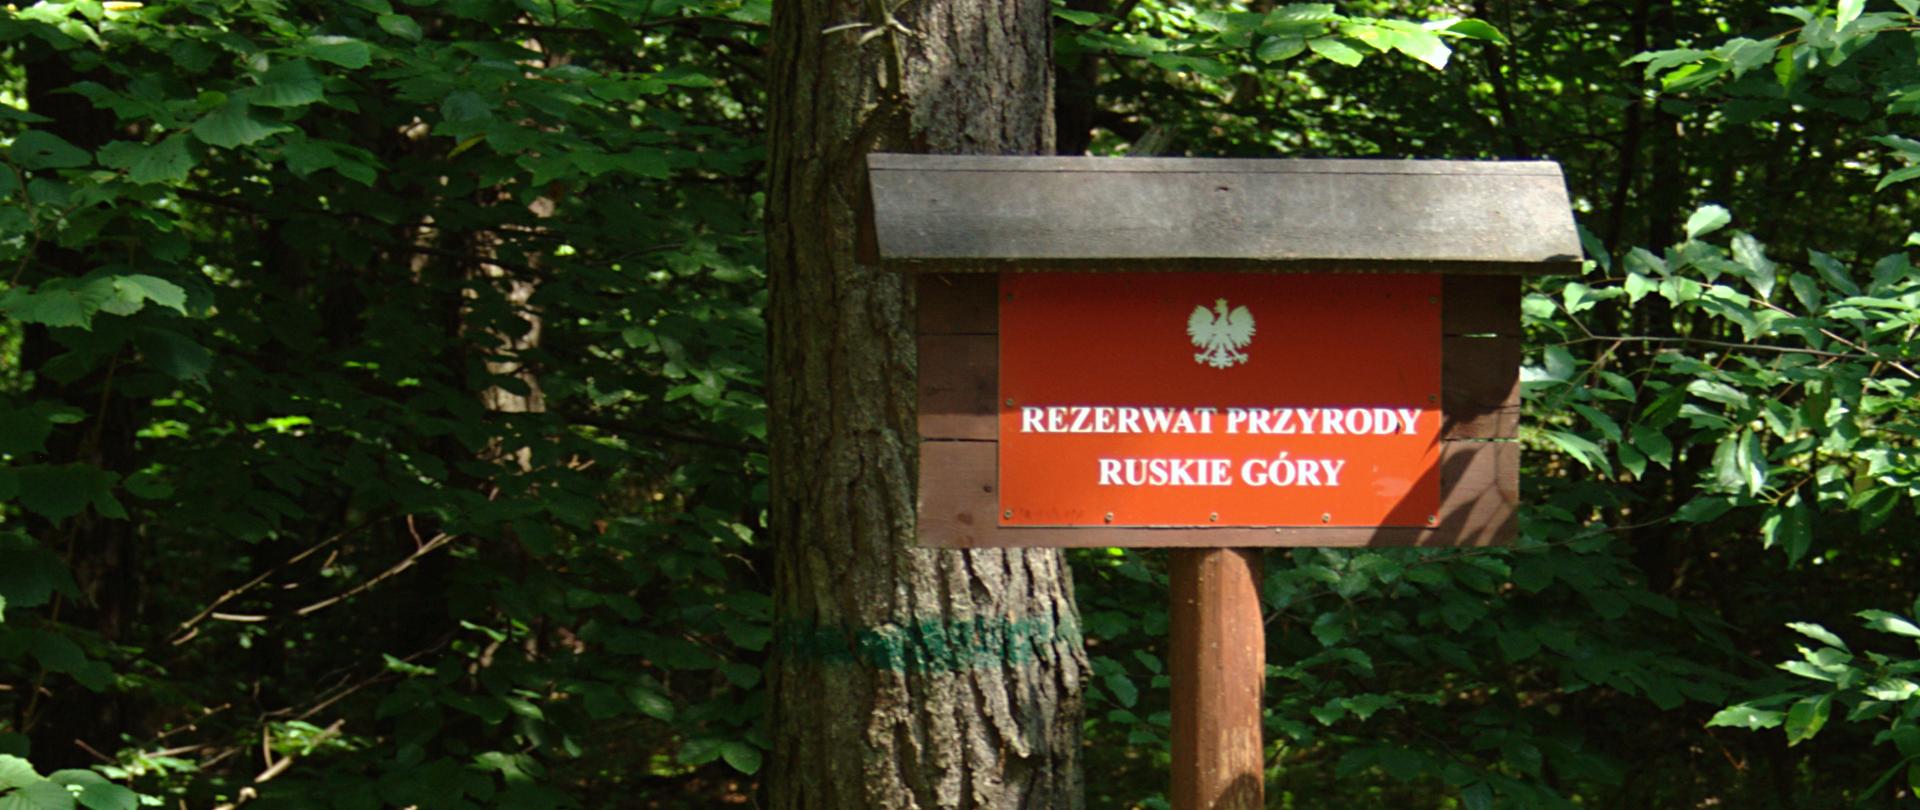 Tablica urzędowa oznaczająca rezerwat, w tle las